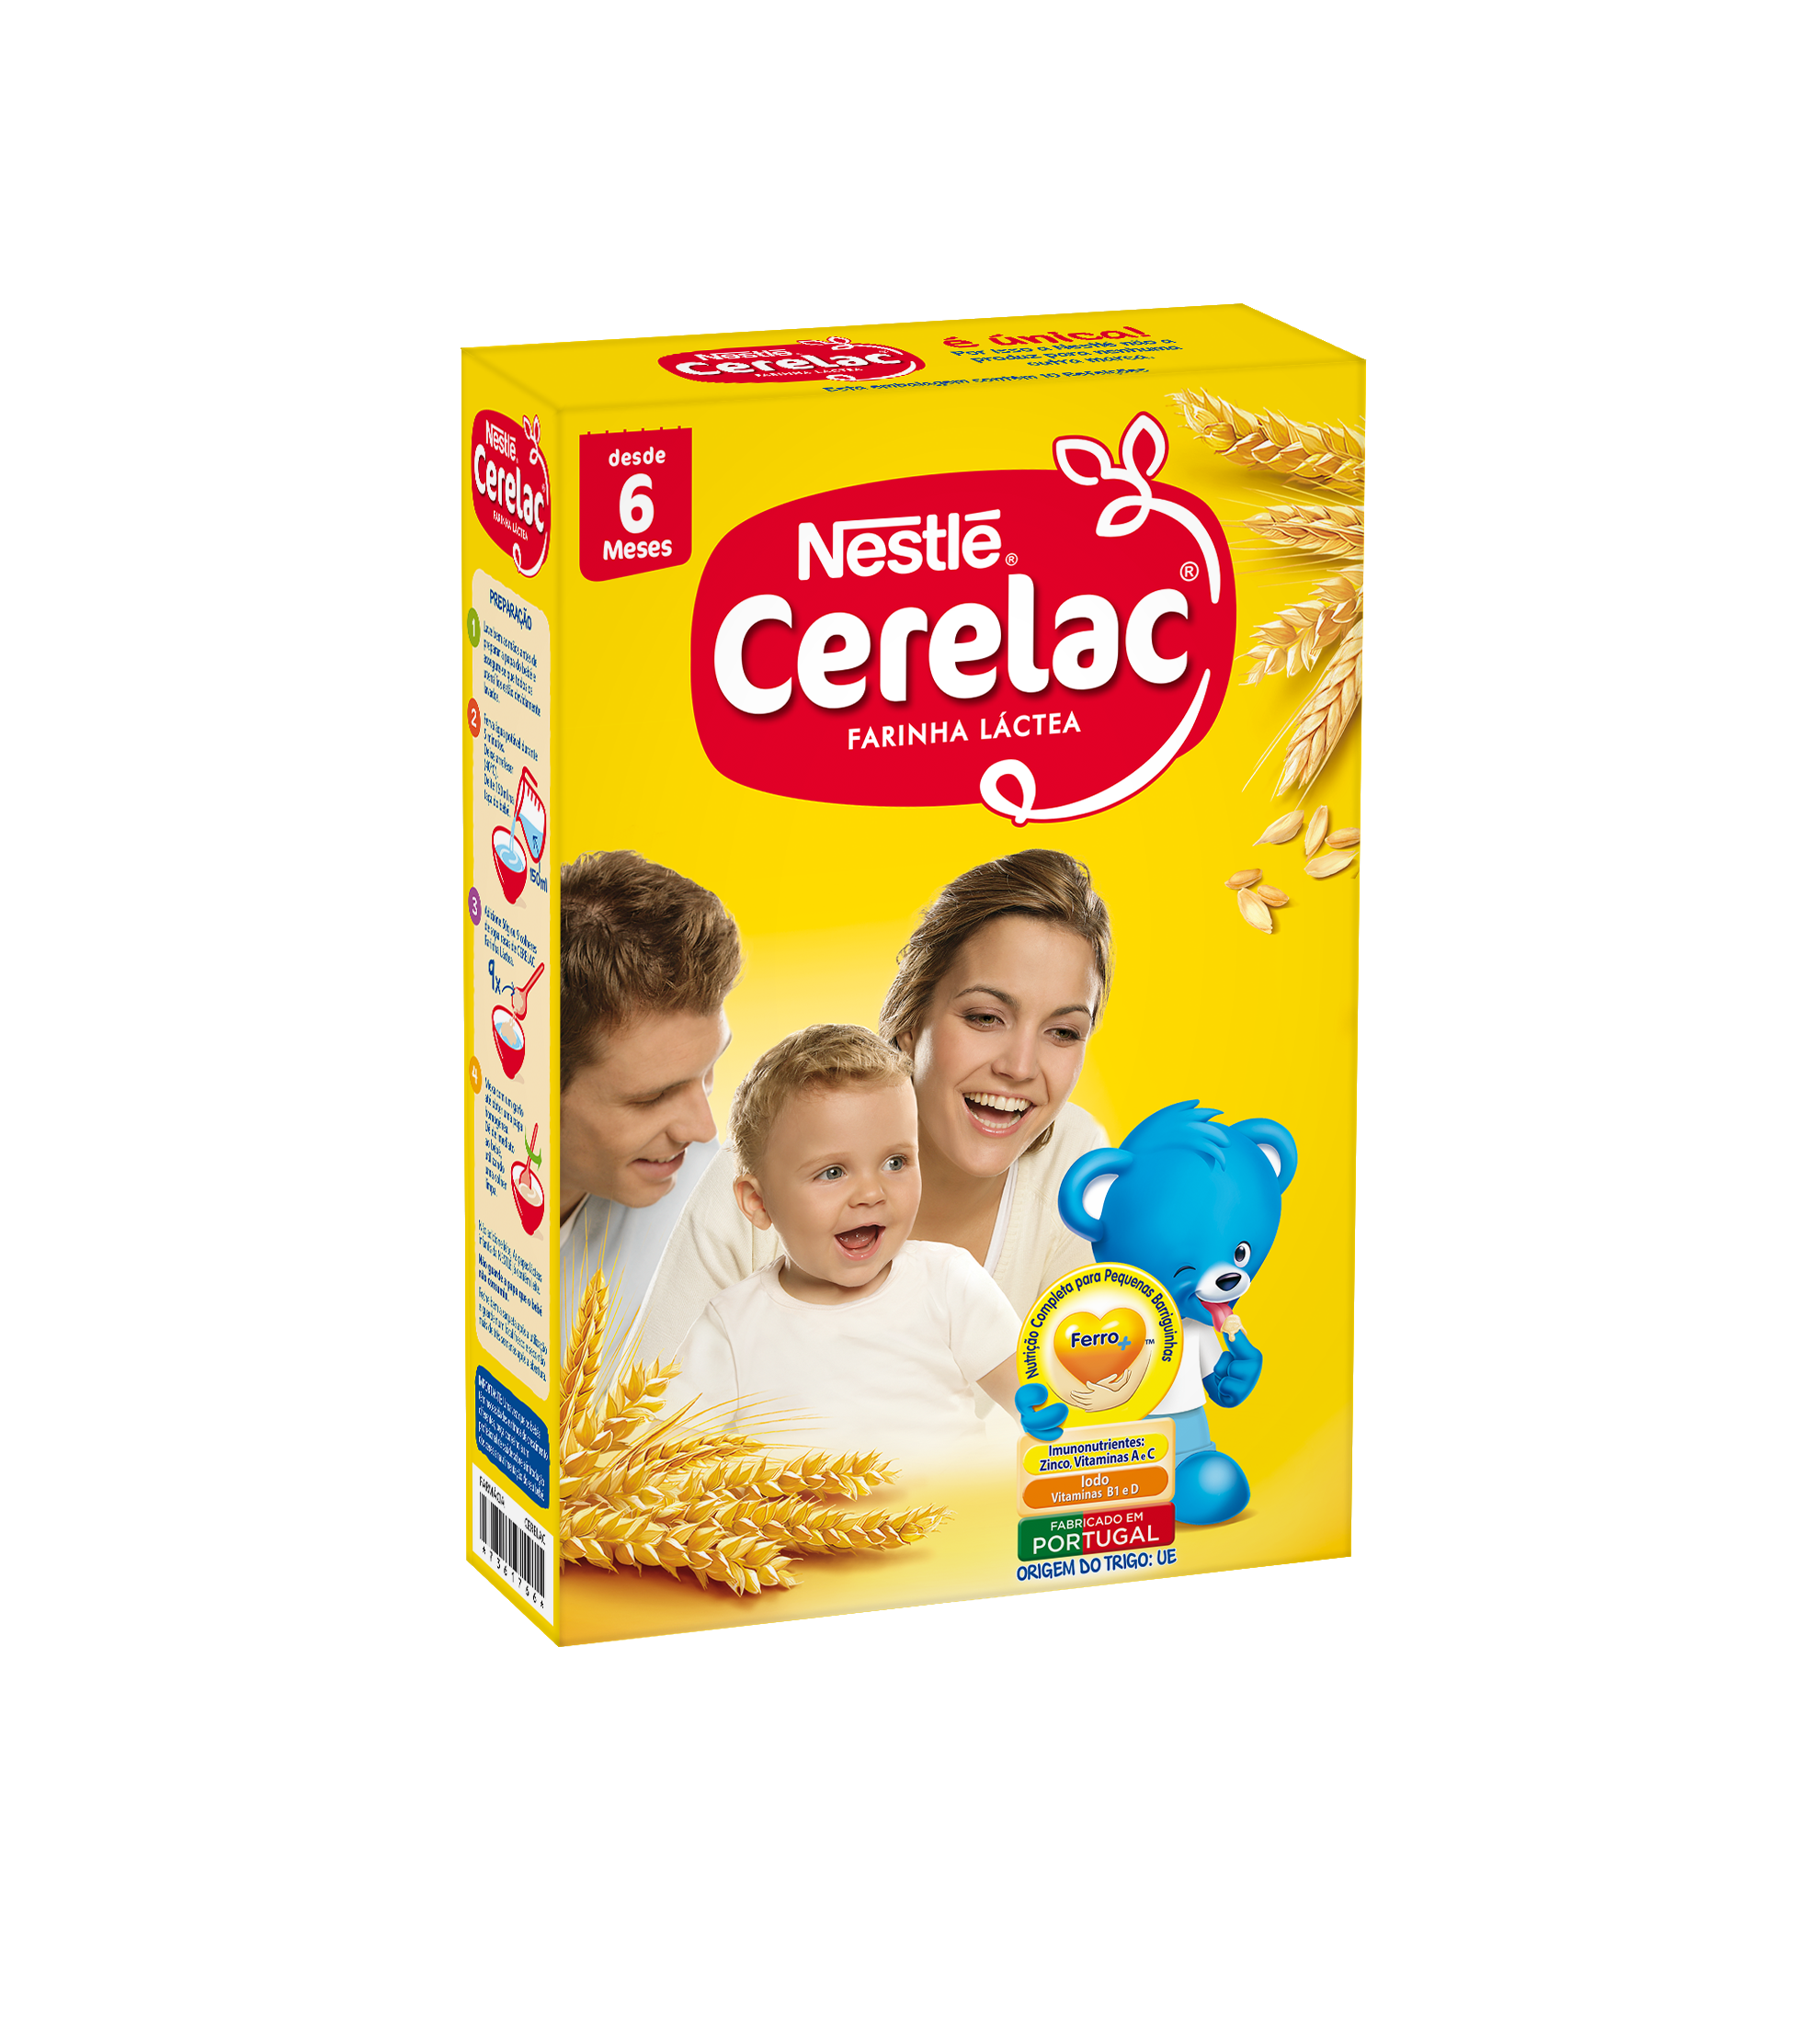 Nestlé Cerelac Farinha Láctea 6M+ 500g